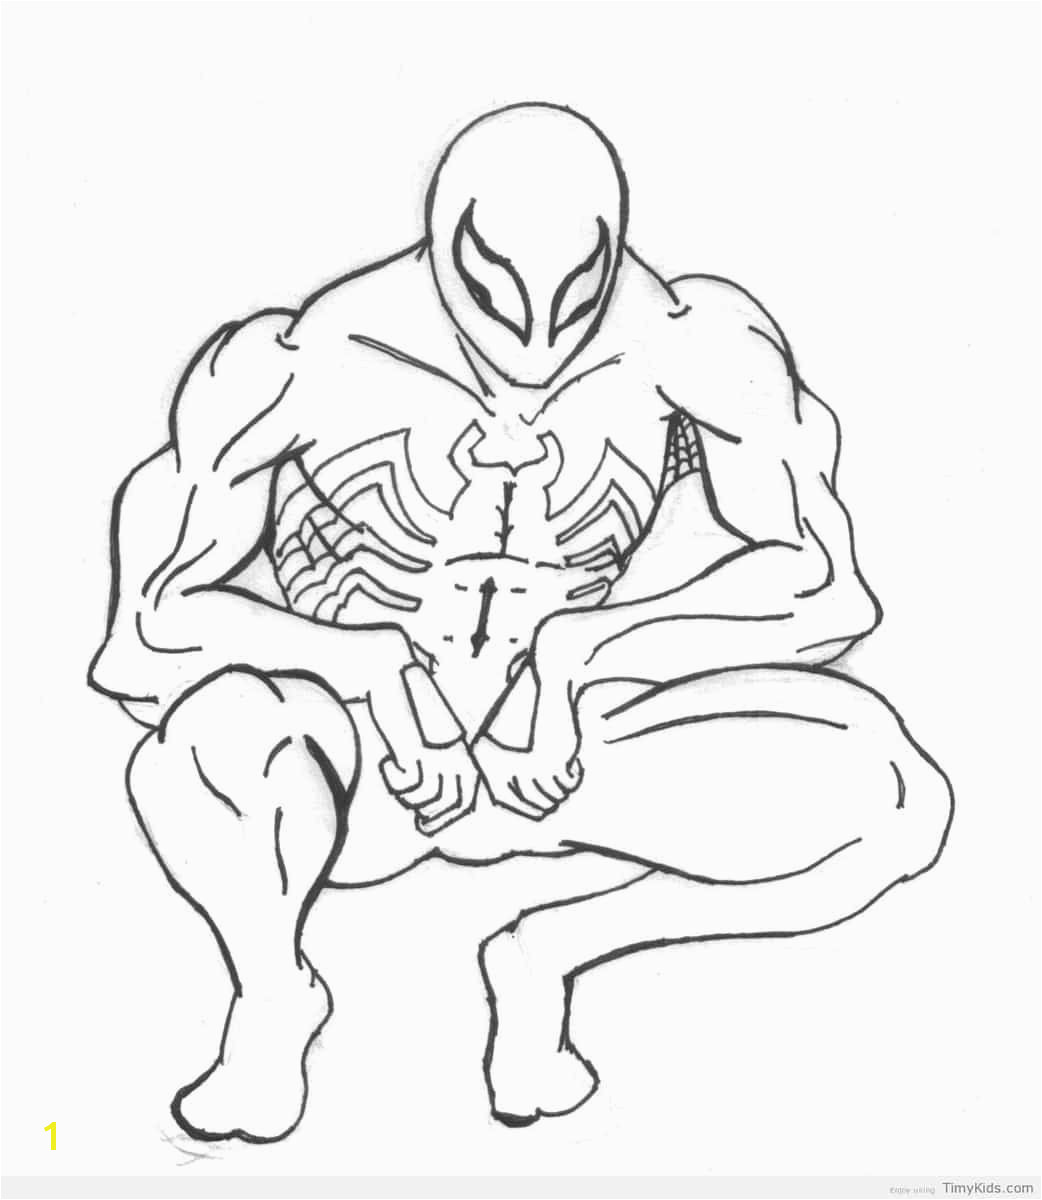 Black Suit Spiderman Coloring Pages Black Spiderman Coloring Pages